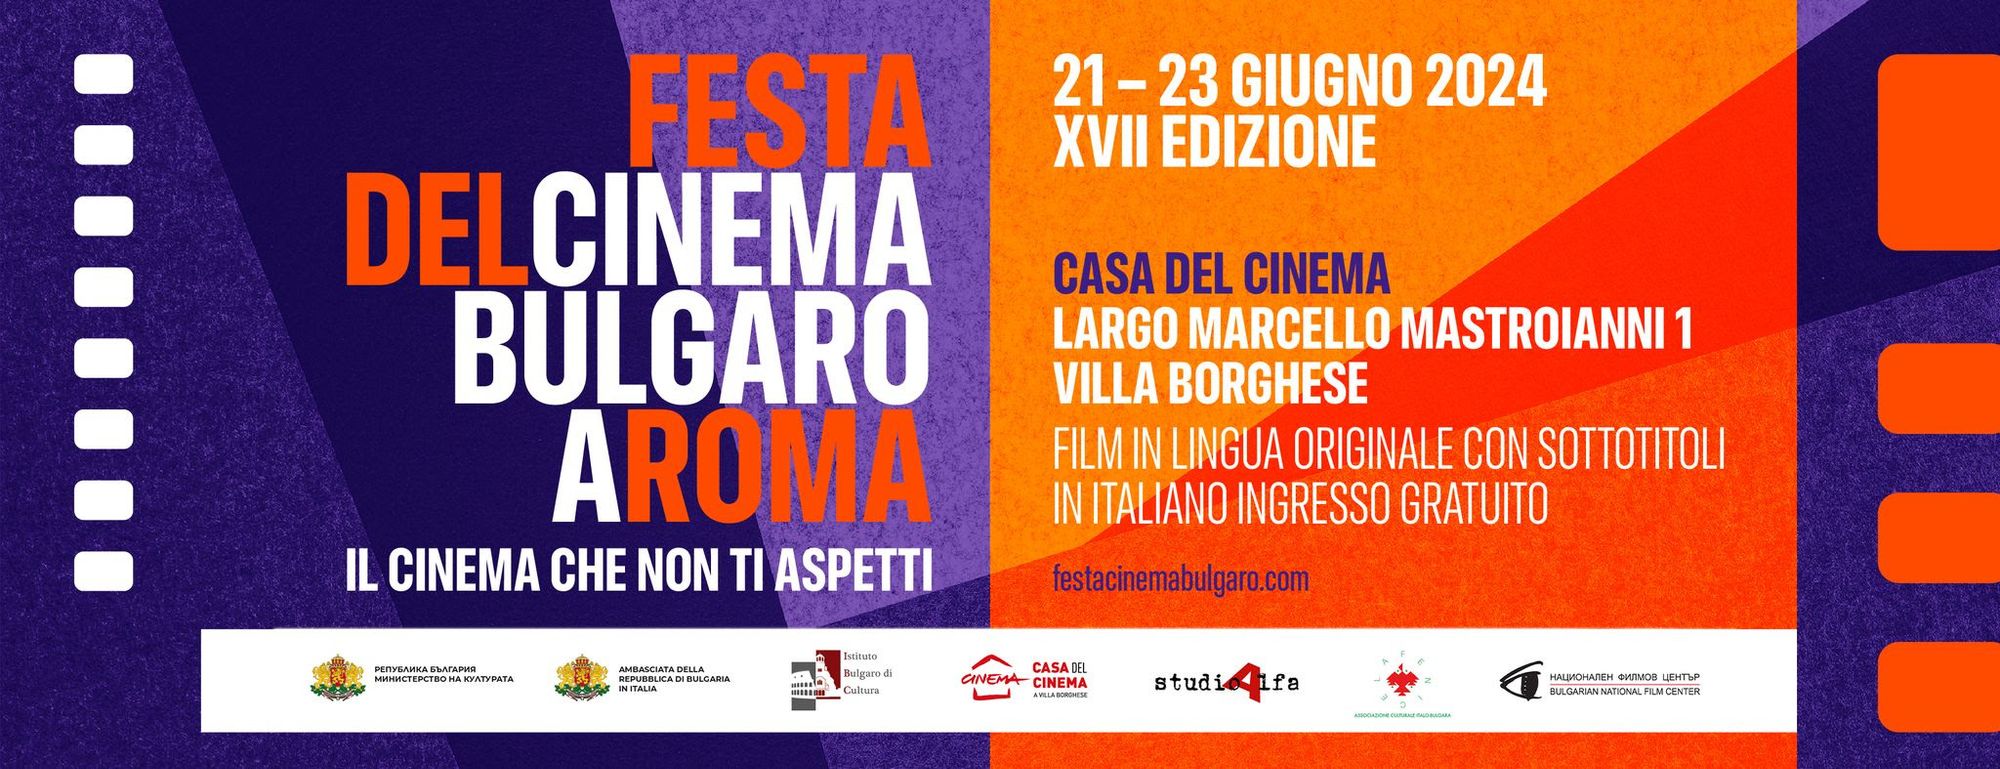 Dal 21 al 23 giugno torna a Roma la Festa del Cinema Bulgaro